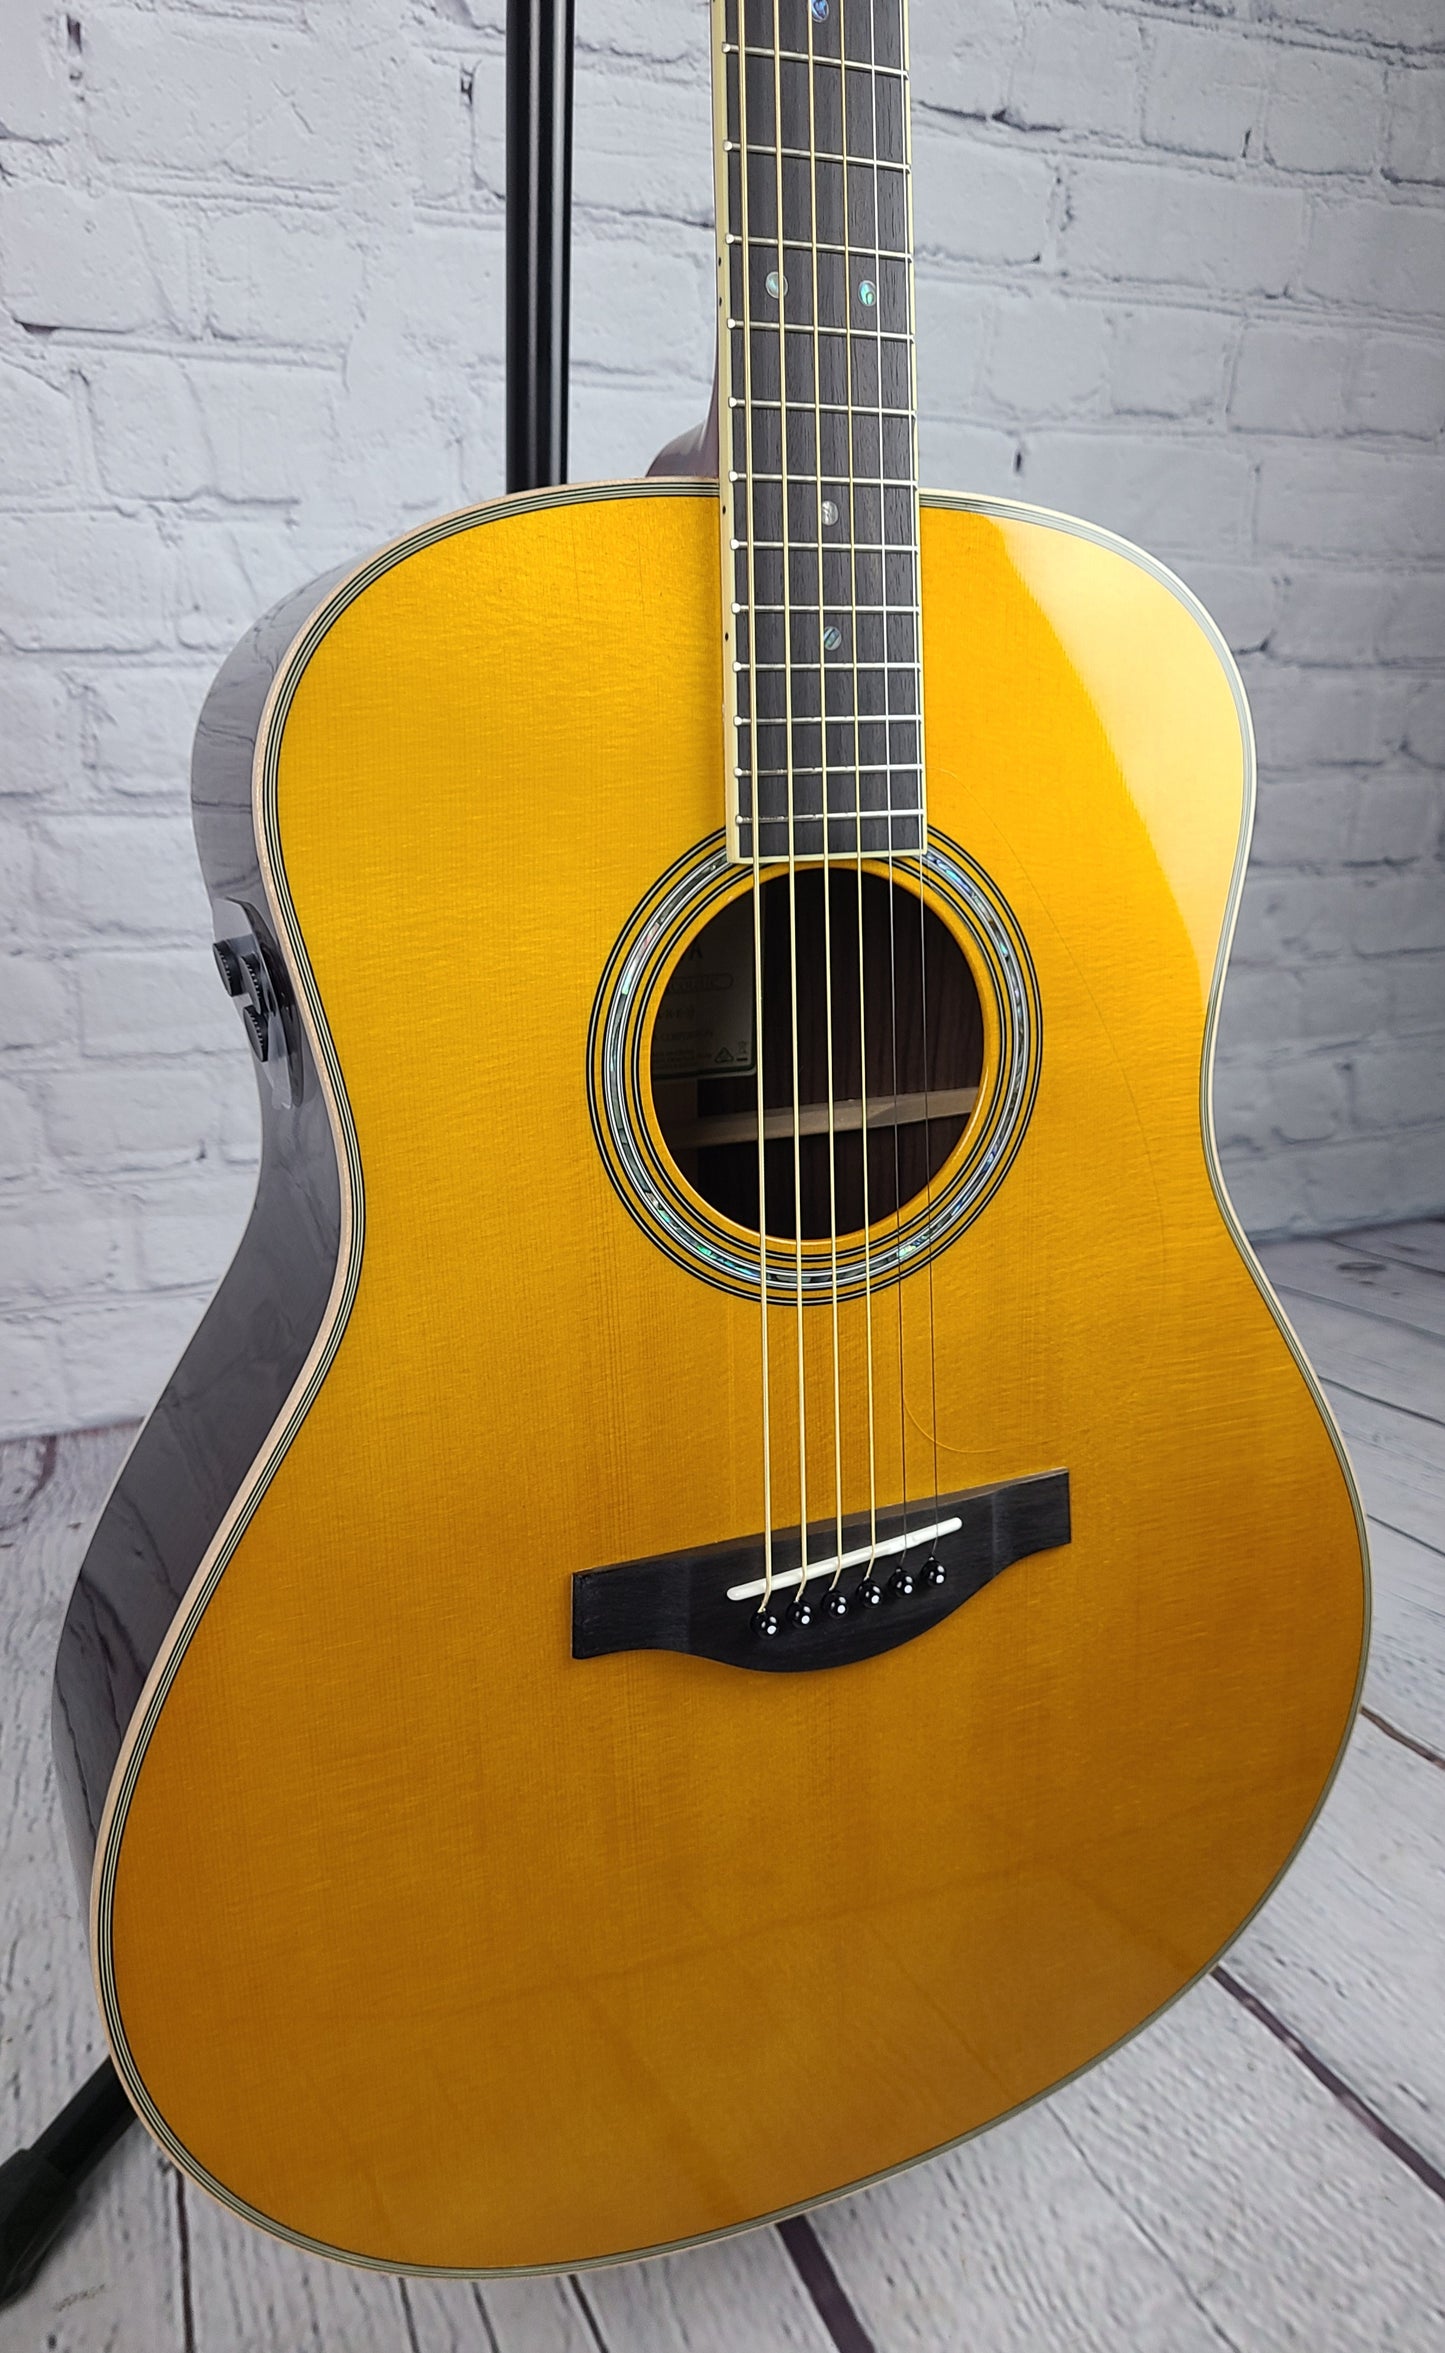 Yamaha LLTA VT TransAcoustic Acoustic Guitar Vintage Tint